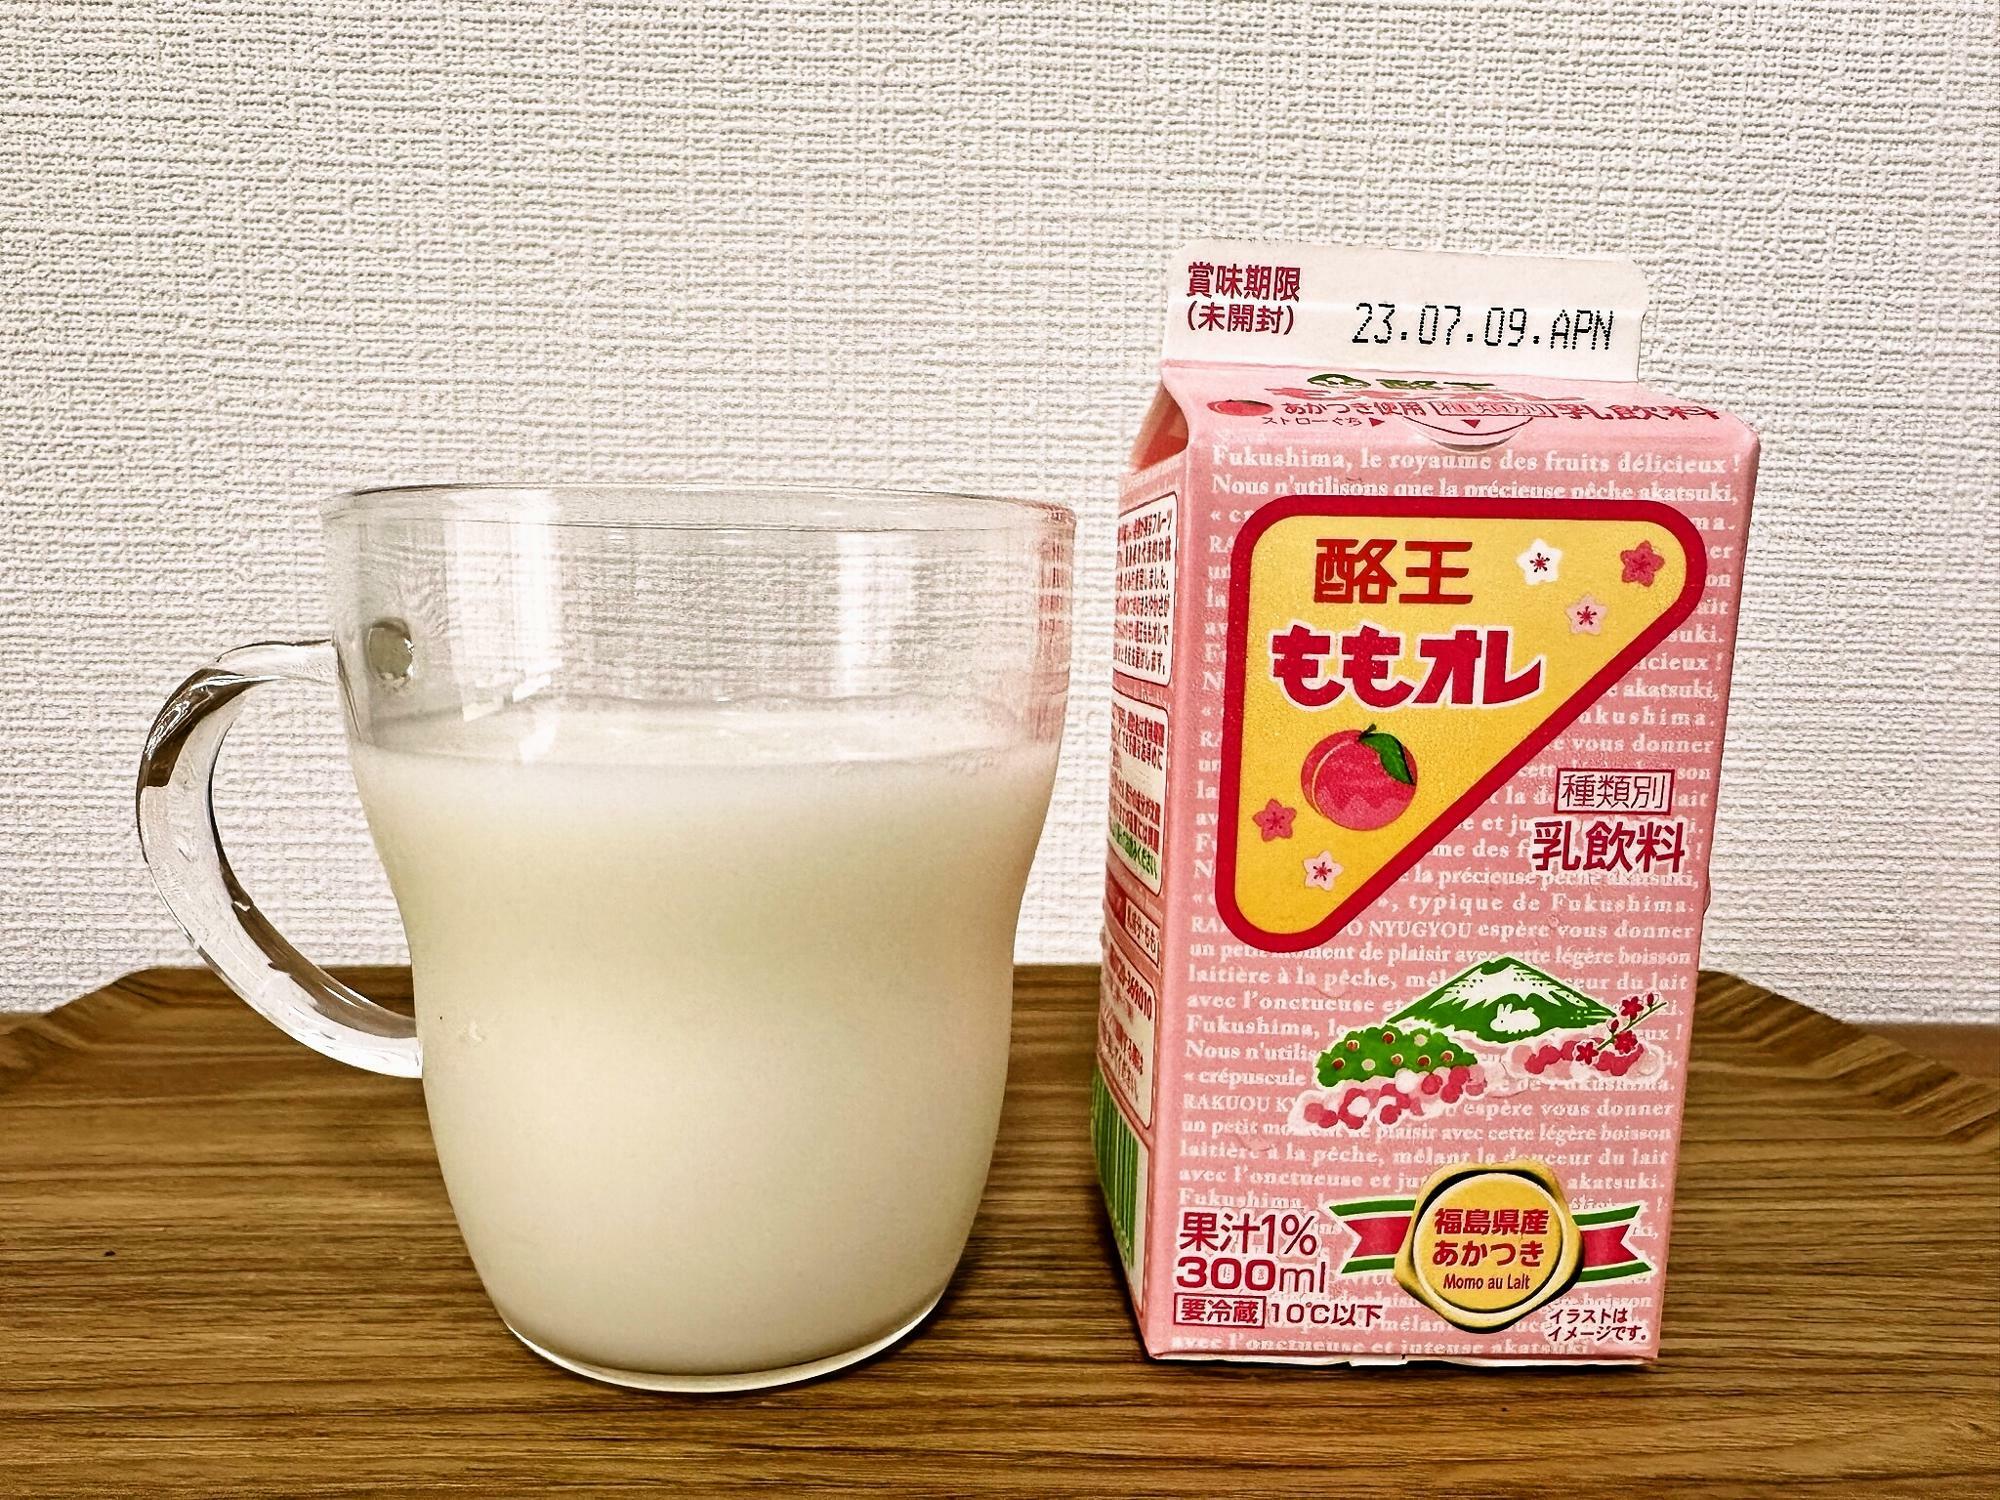 あかつきは「白鳳」と「白桃」の交配 によってできた福島県発祥の品種で、ジューシーで甘味が強いのが特徴。